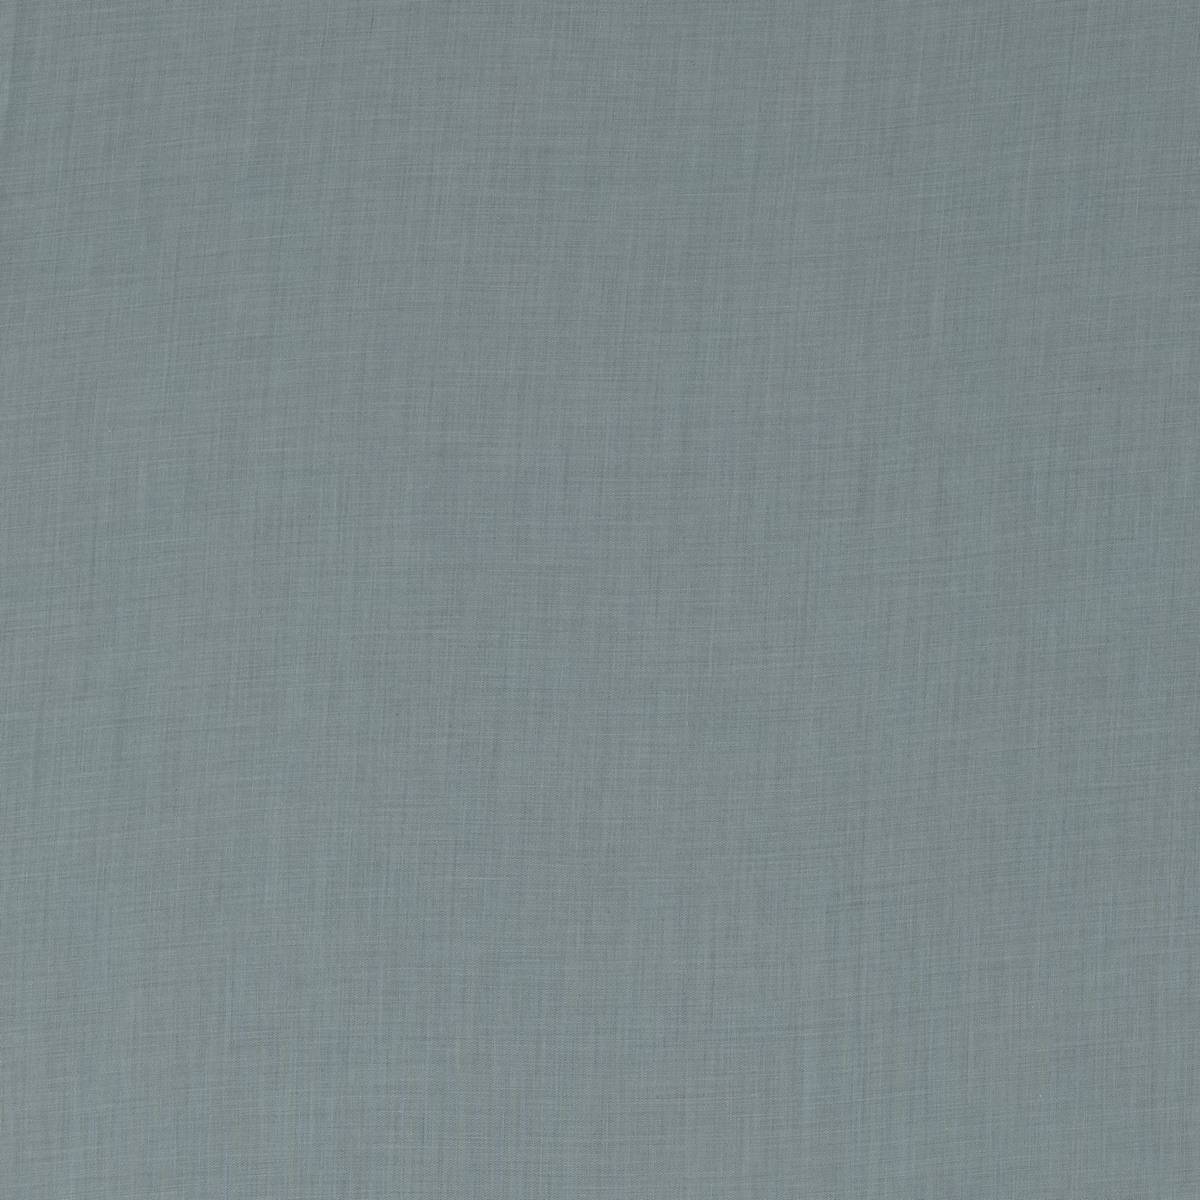 Otia Blue Umber Fabric by Zoffany